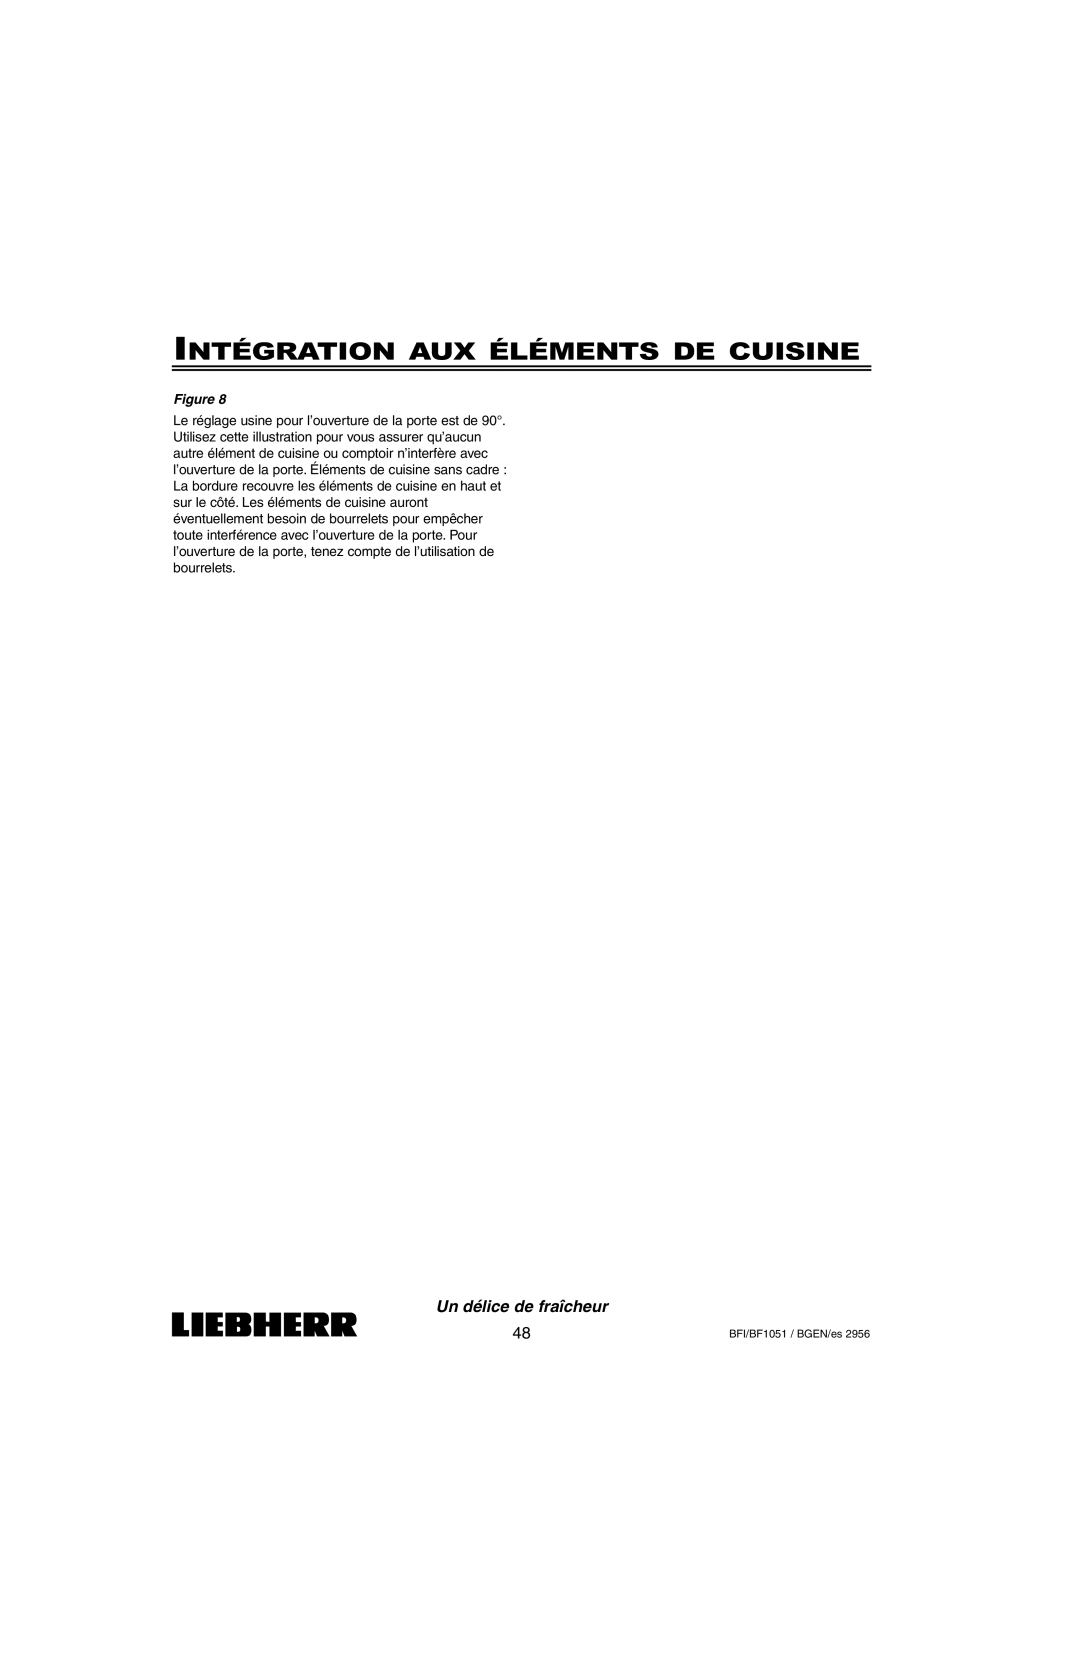 Liebherr BFI1051, BF1051 installation instructions Intégration Aux Éléments De Cuisine, Un délice de fraîcheur, Figure 